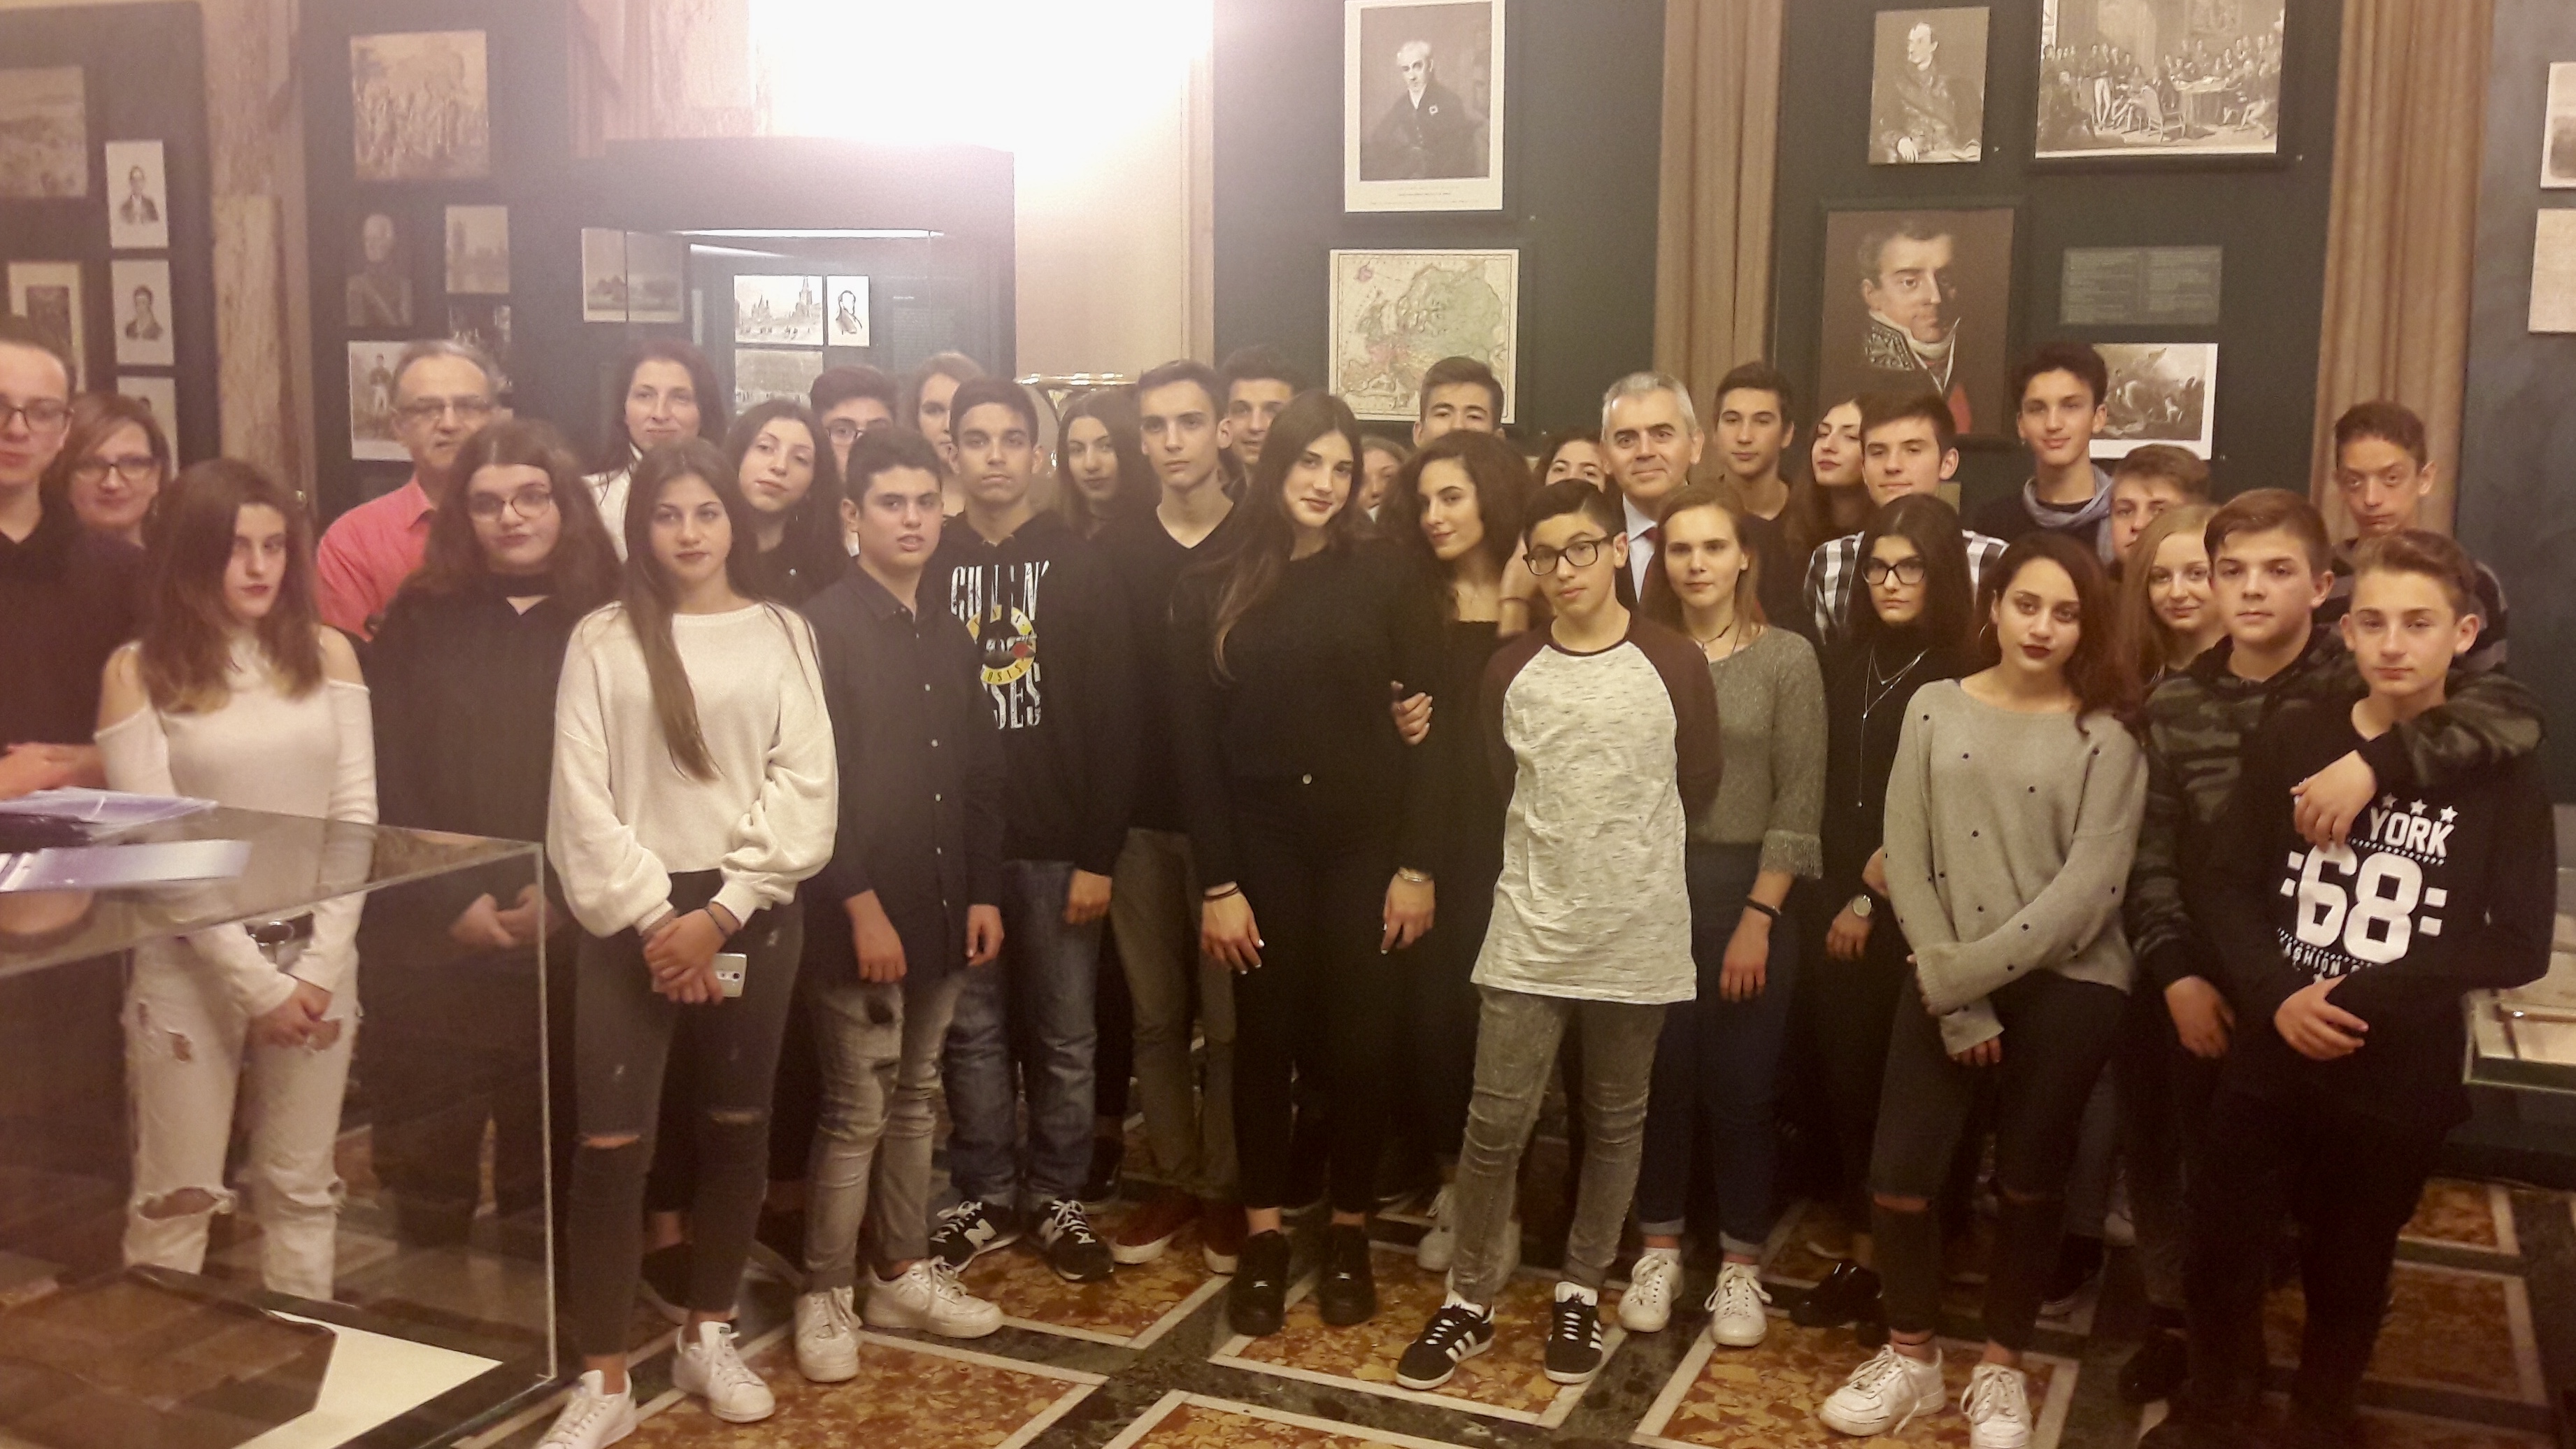 Χαρακόπουλος σε μαθητές: "Η Δημοκρατία μας ζητούμενο για πολλές χώρες"